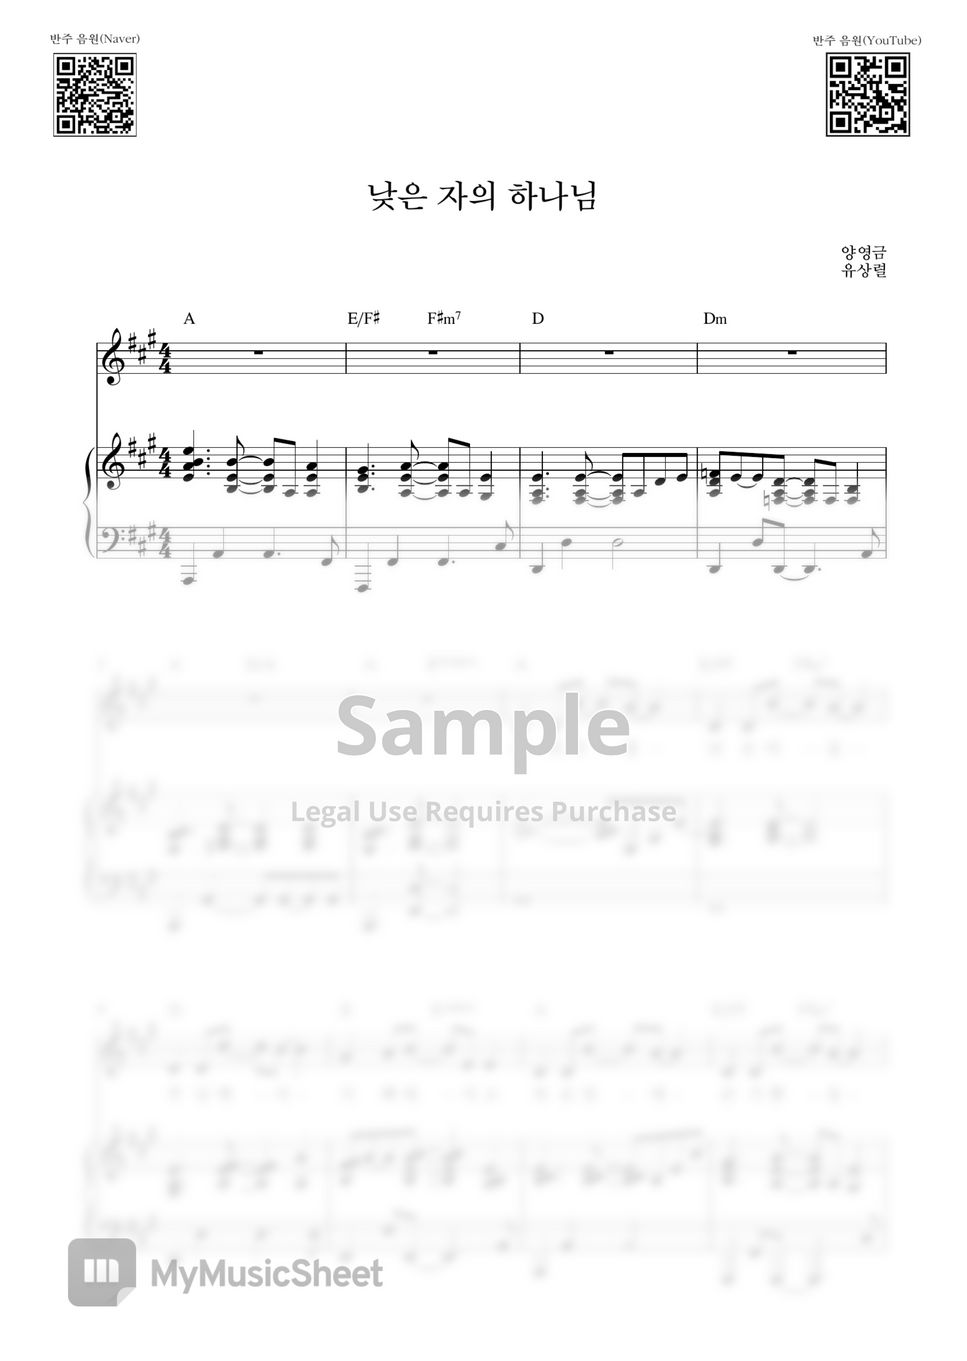 양영금 - 낮은 자의 하나님(나의 가장 낮은 마음) (피아노 3단) by Samuel Park